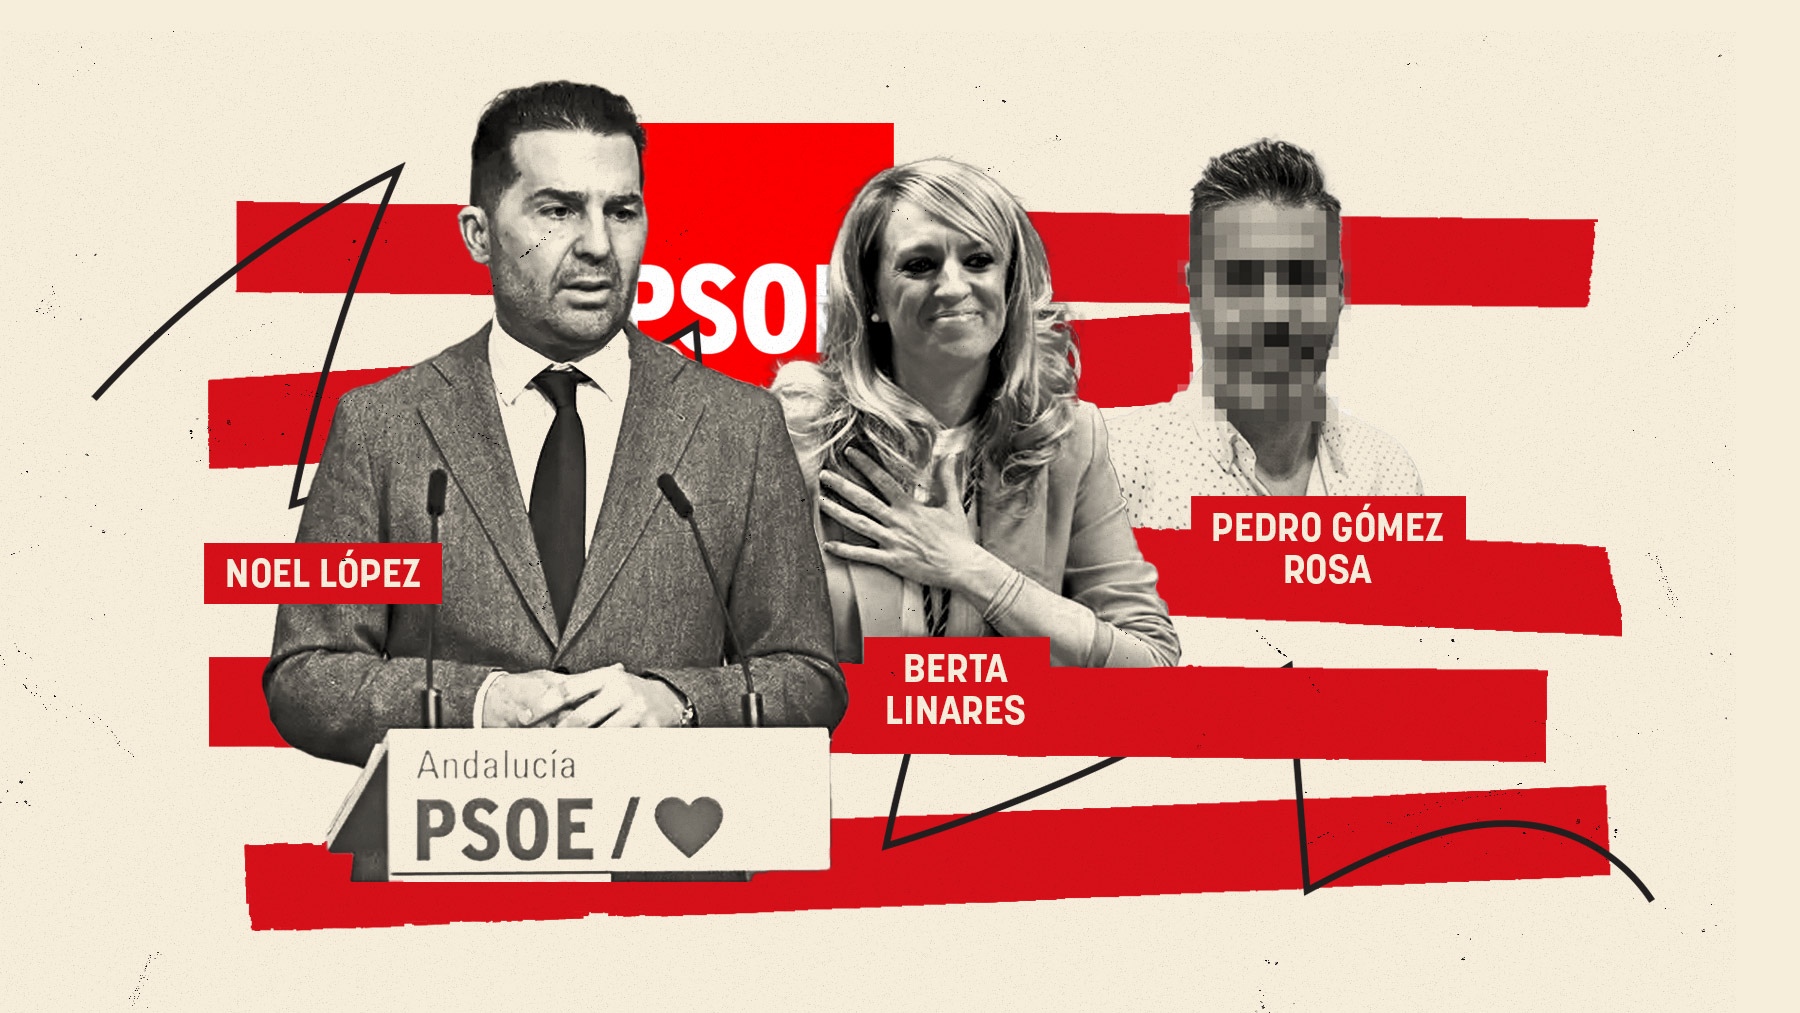 Los implicados en el secuestro de Maracena: Noel López, Berta Linares y Pedro Gómez Rosa, presunto secuestrador.